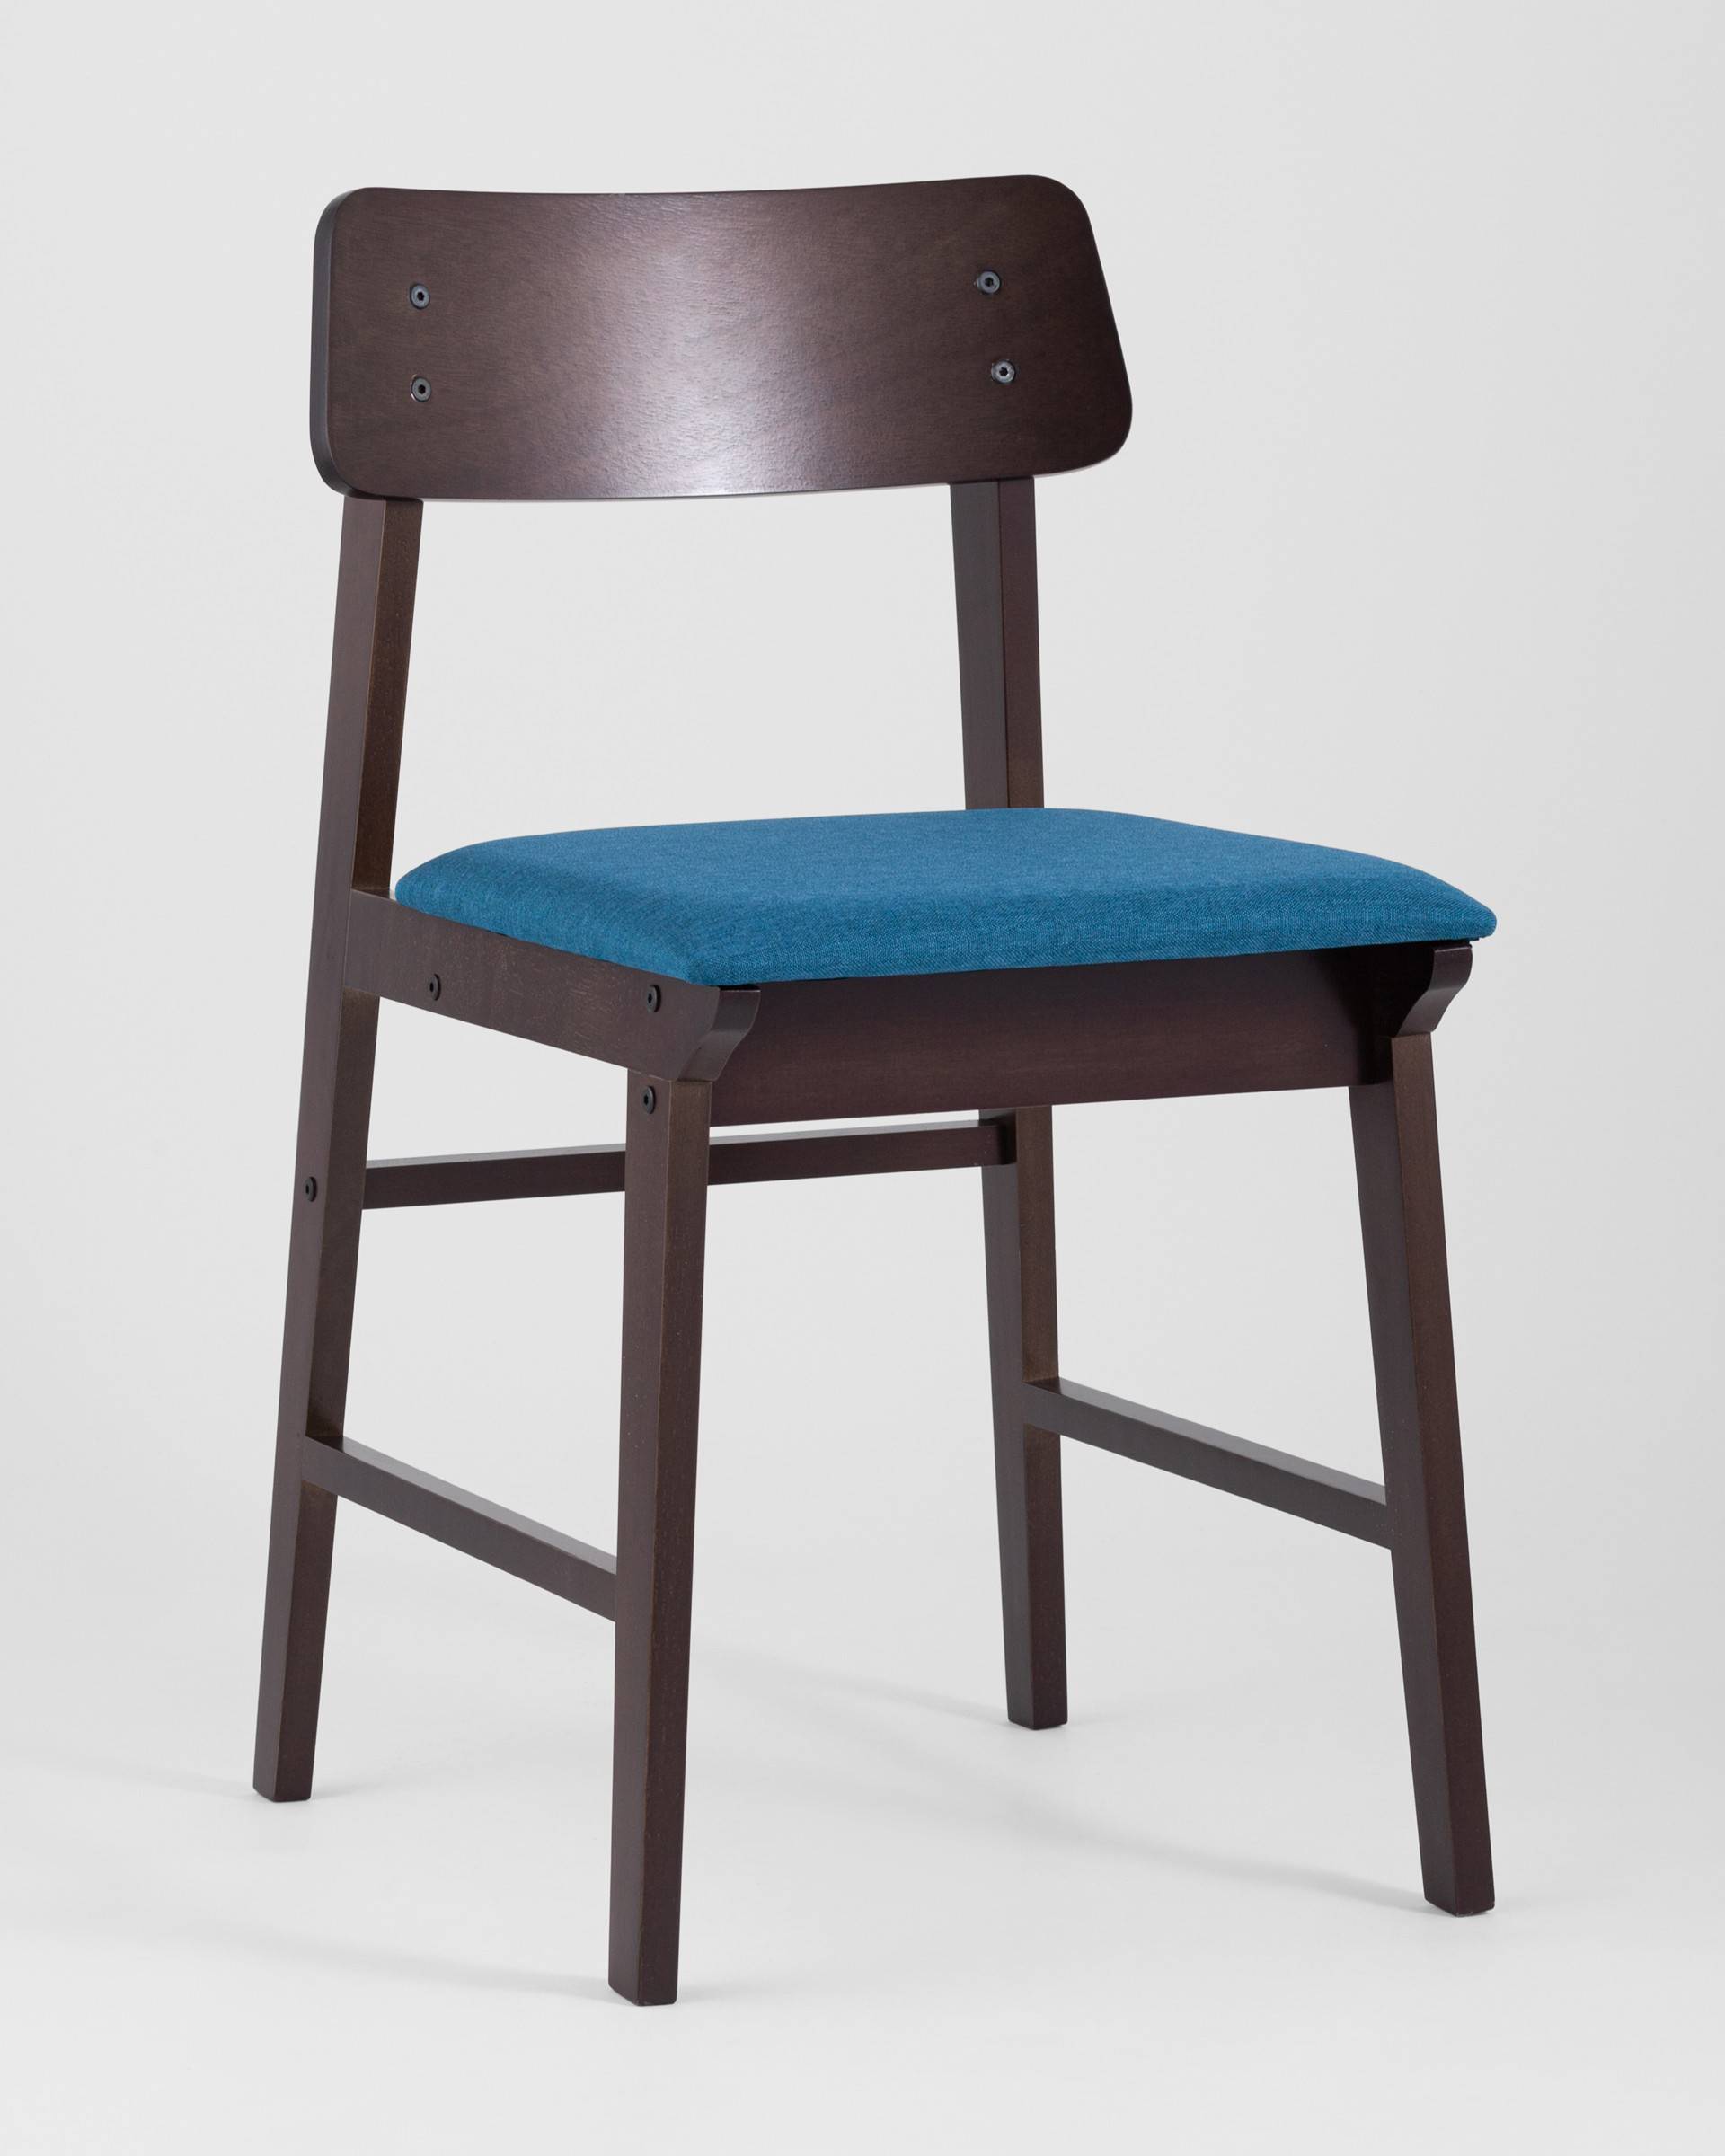 Стул кресло 59х59х110 см синий с подстаканником 120 кг green day